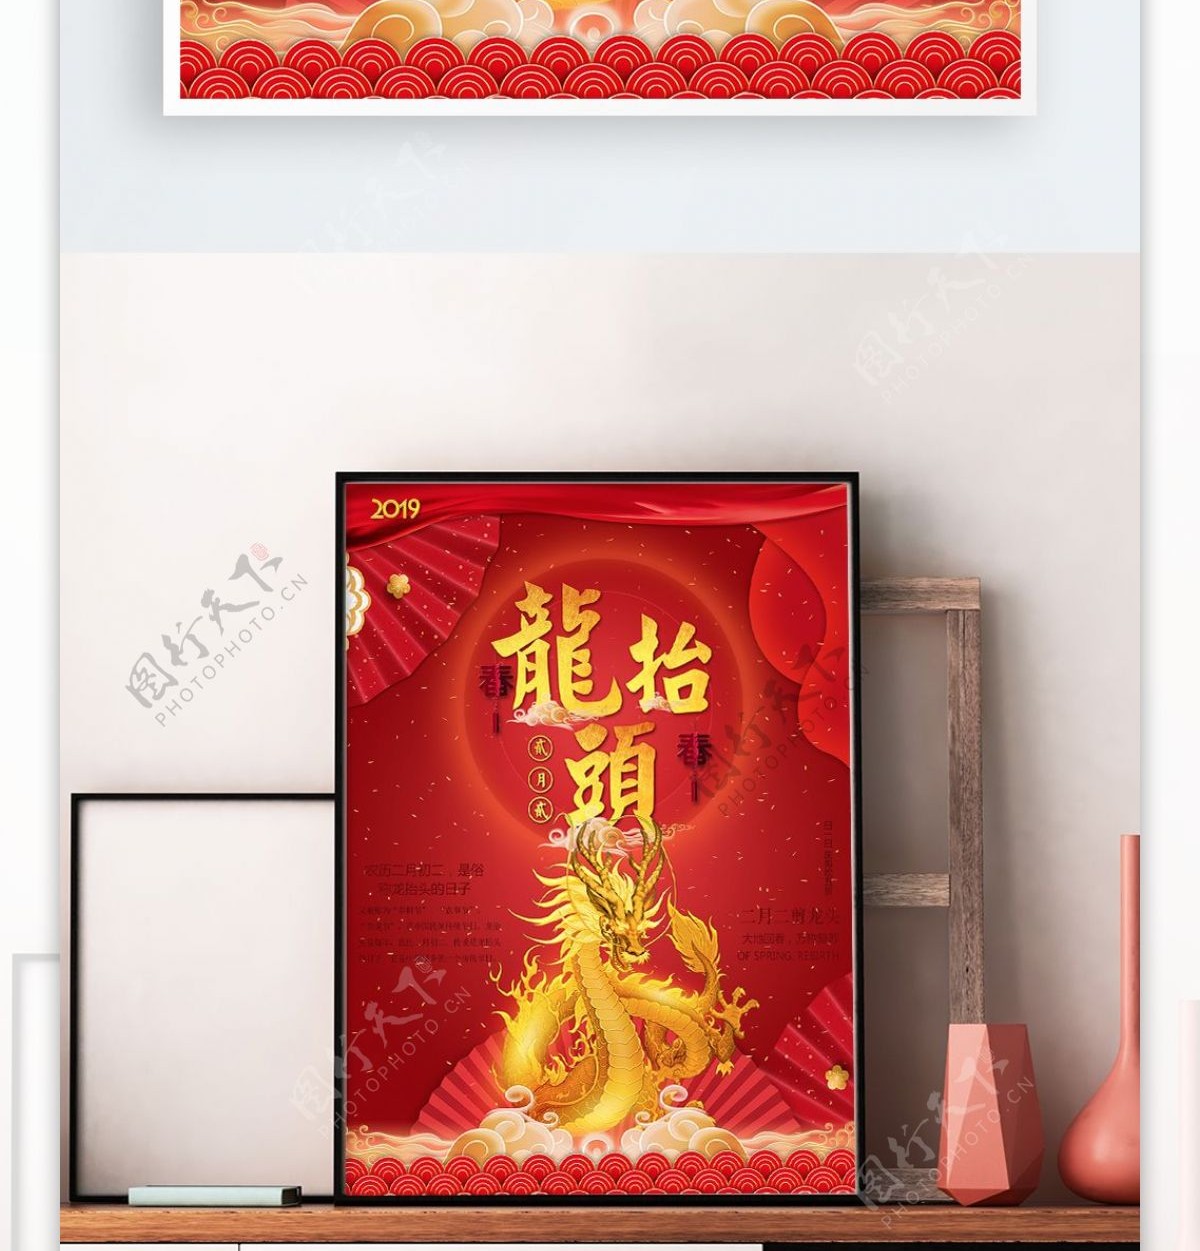 中国元素龙抬头节假日促销海报